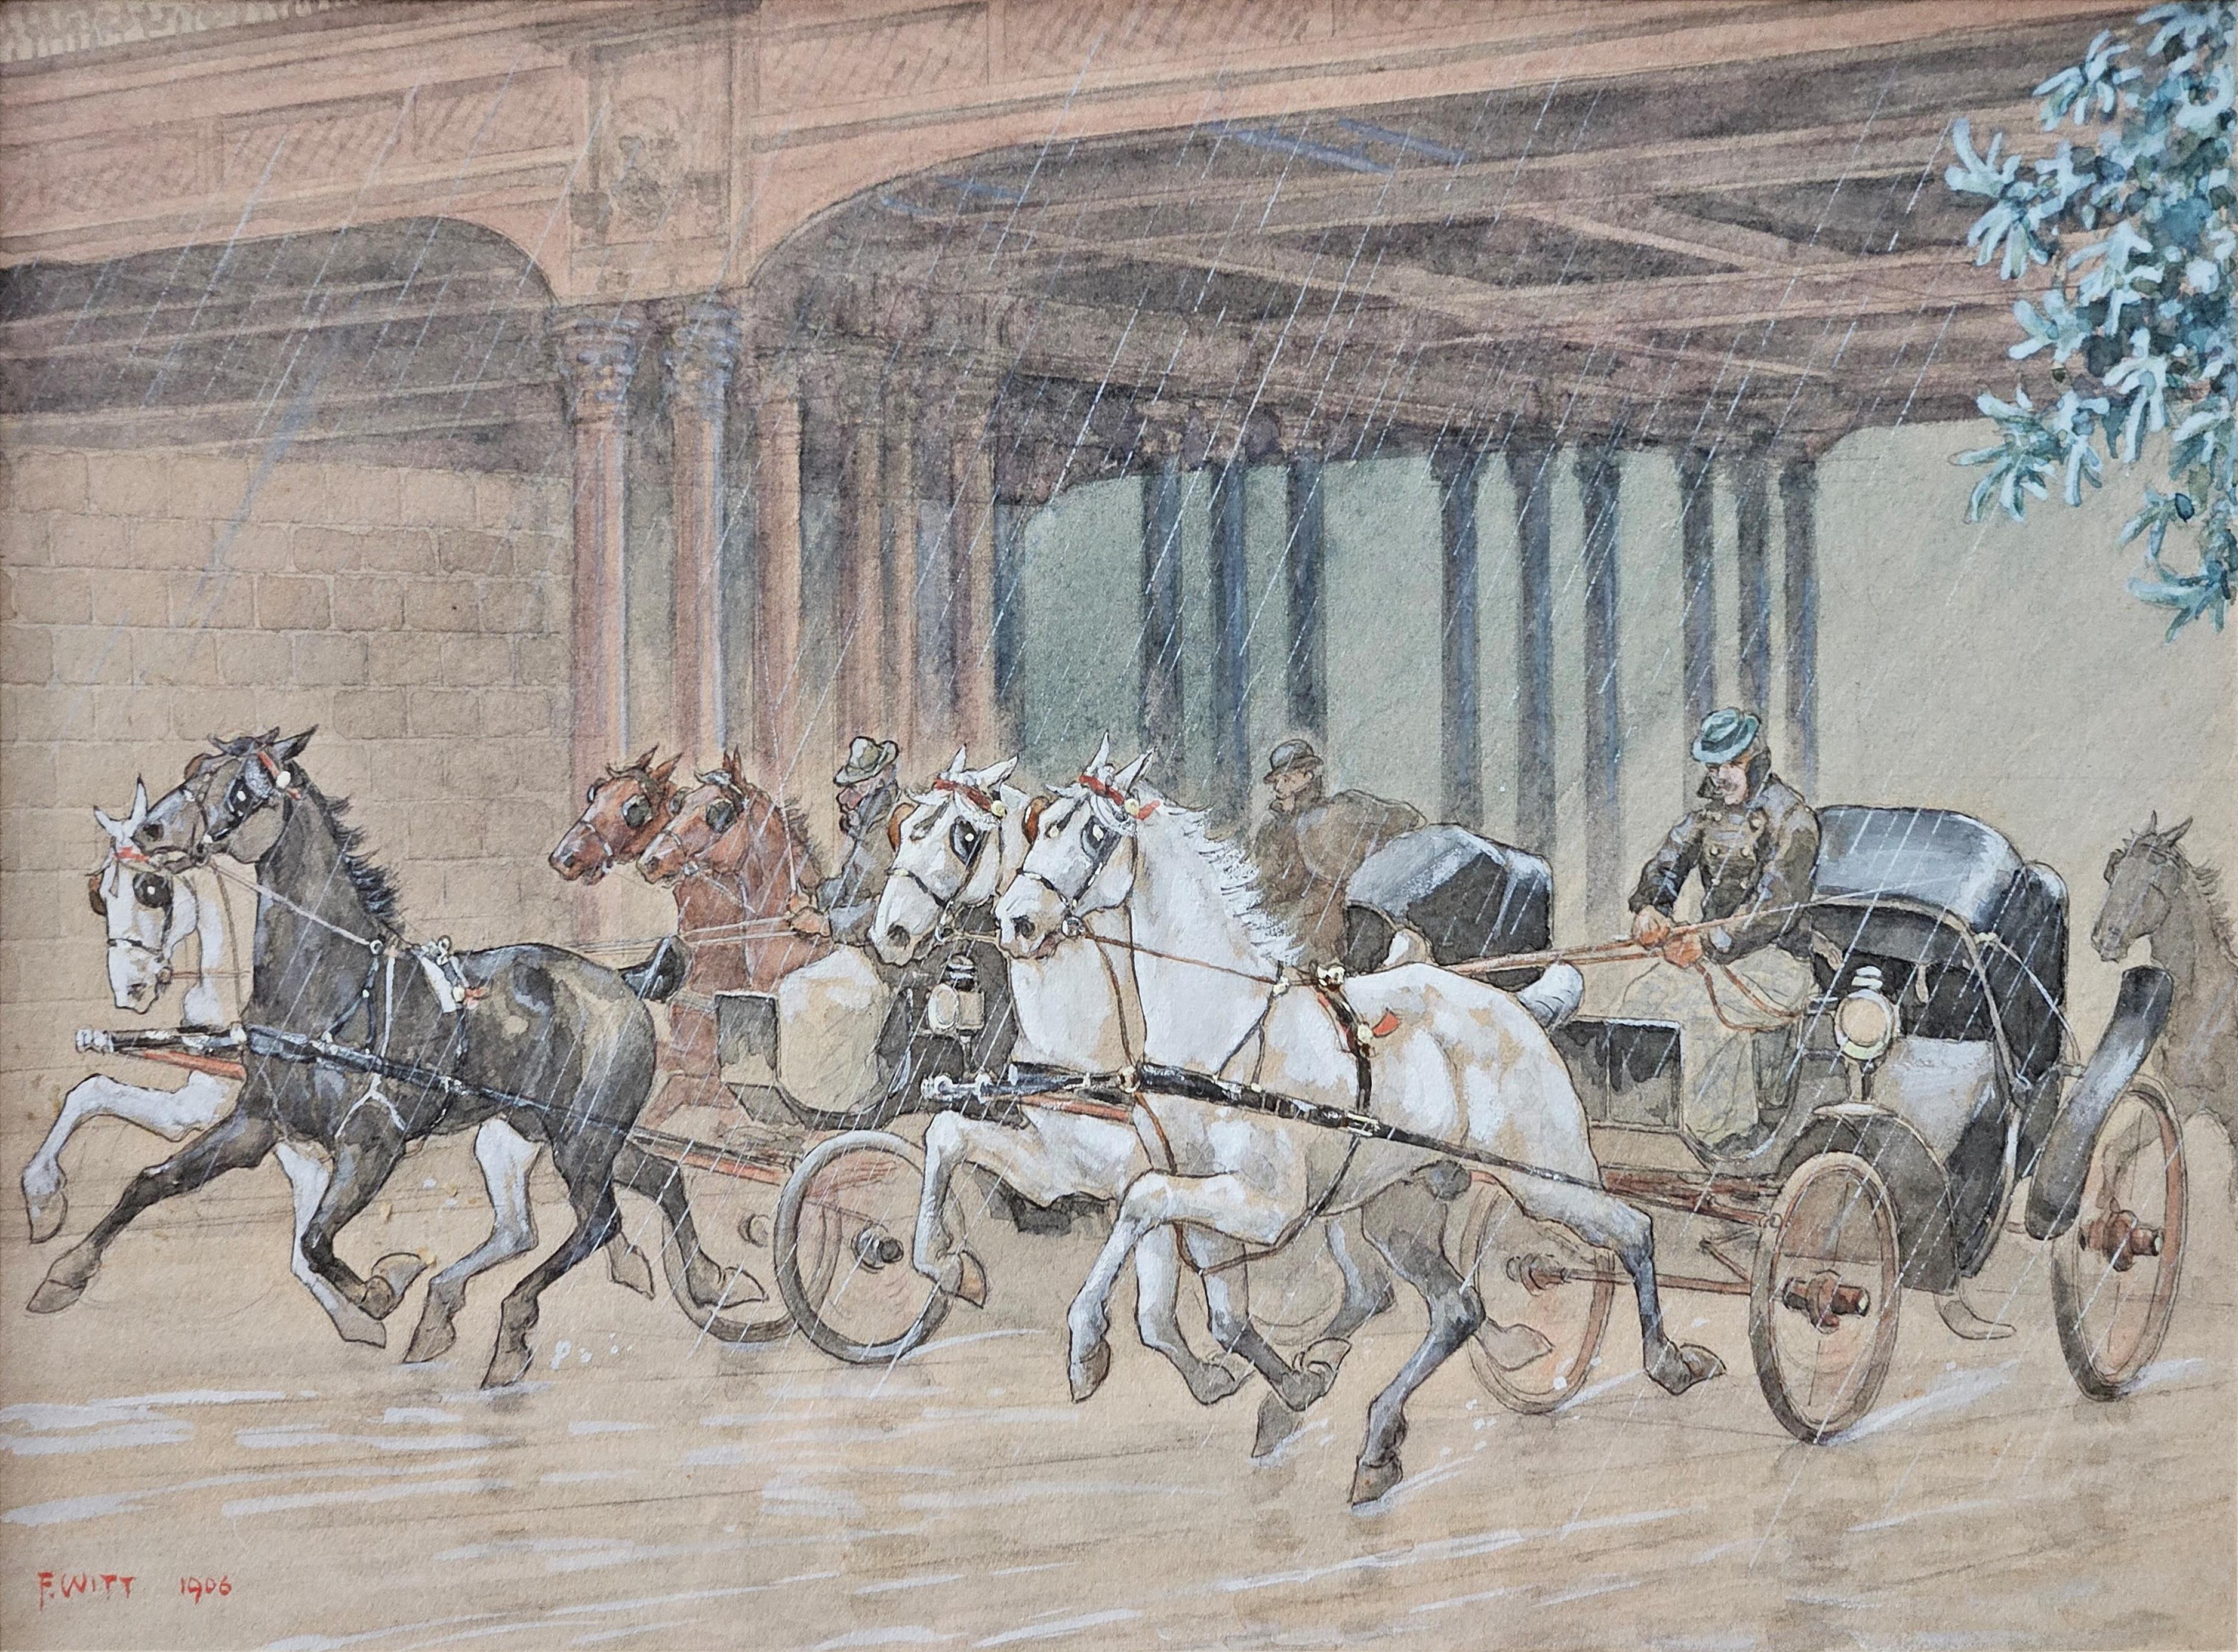 Zwei- und einspännige Kutschenrennen, signiert Franz Witt (Schloß Mähren 1864 - ?).
Bleistift, Aquarell, Deckweiß auf Karton.
28 cm x 18 cm